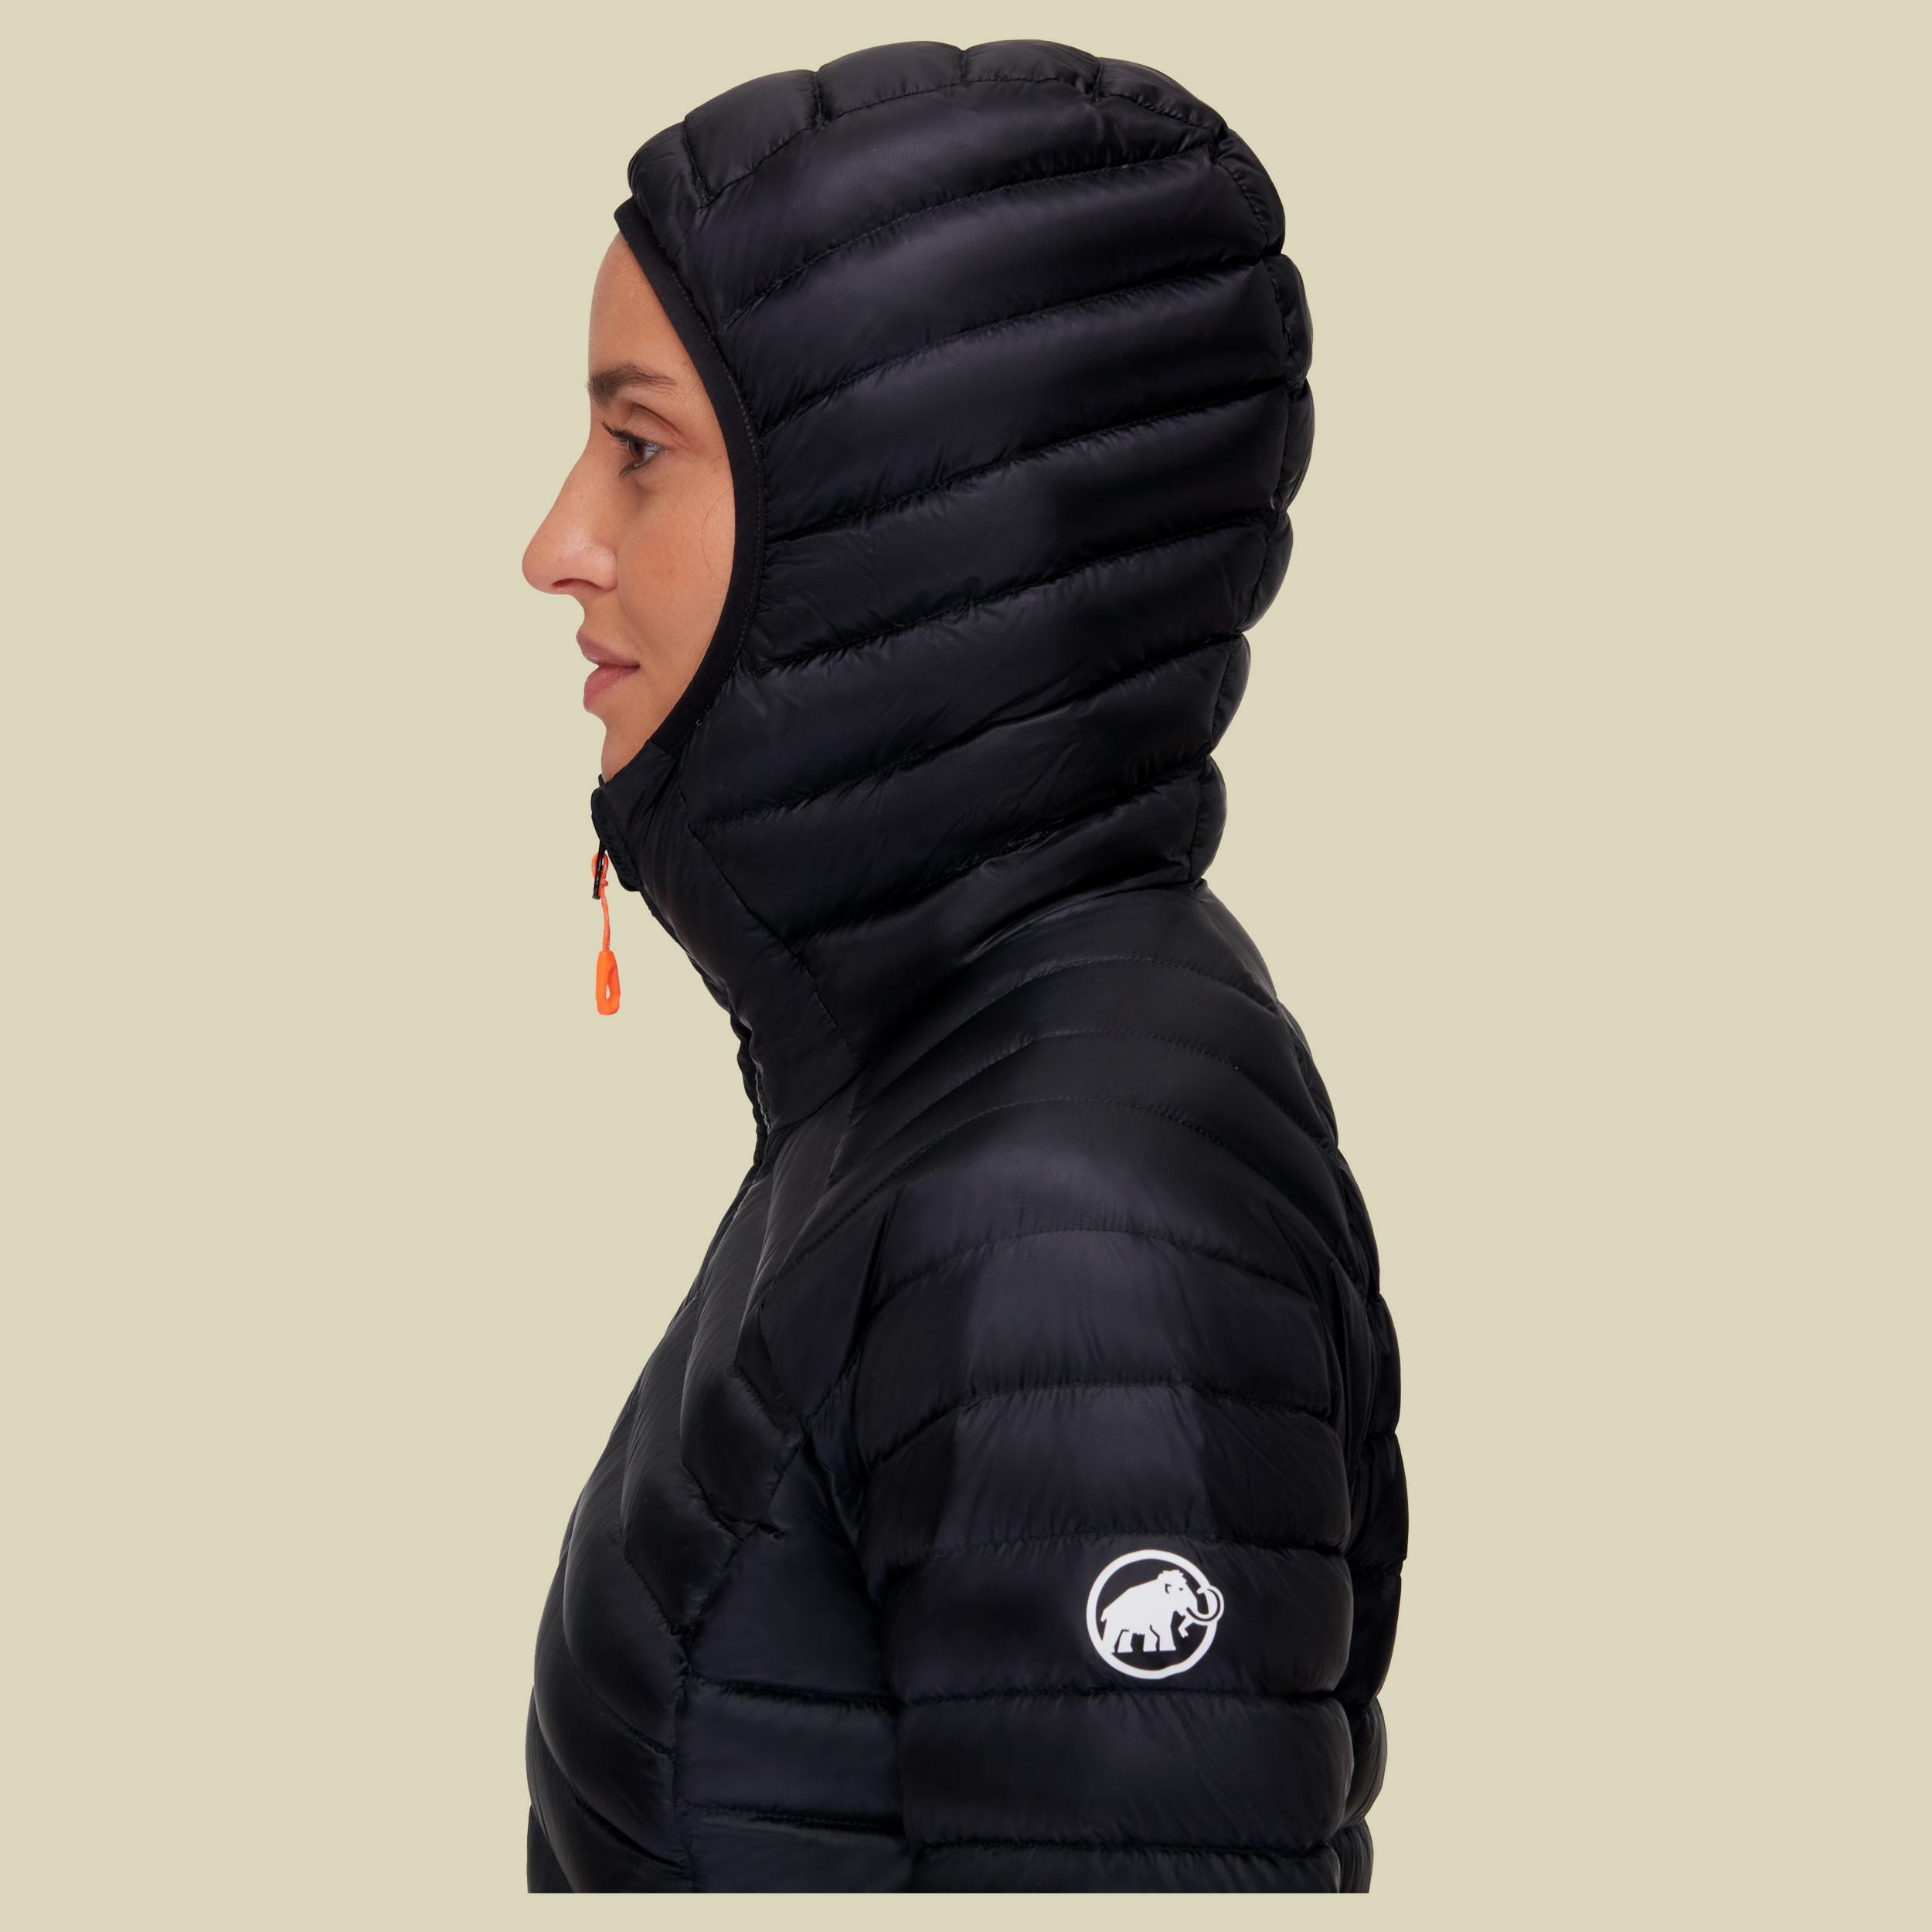 Broad Peak IN Hooded Jacket Women Größe M  Farbe black